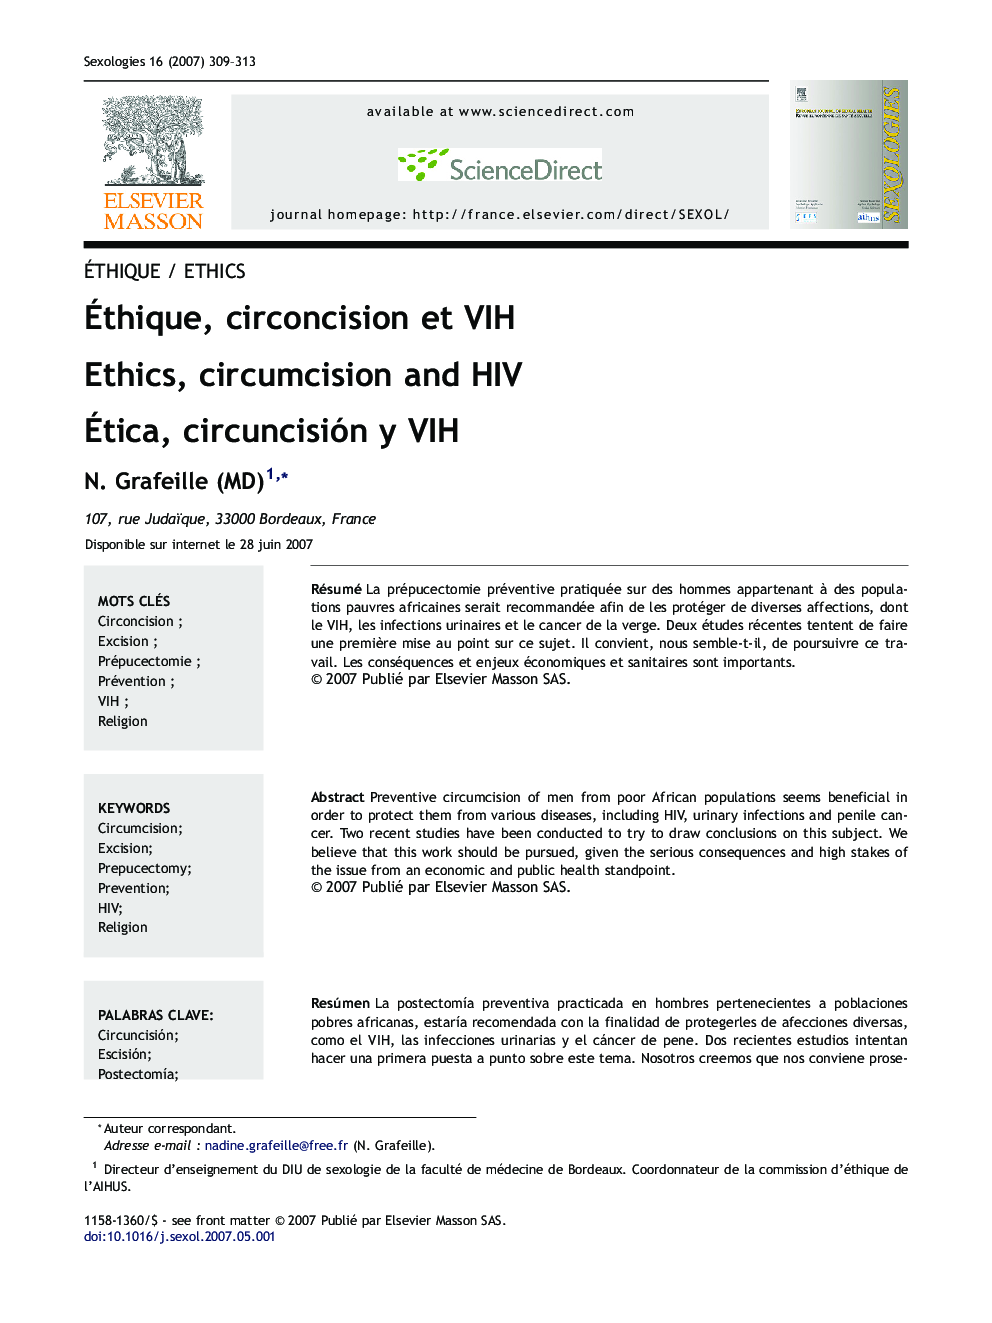 Éthique, circoncision et VIH